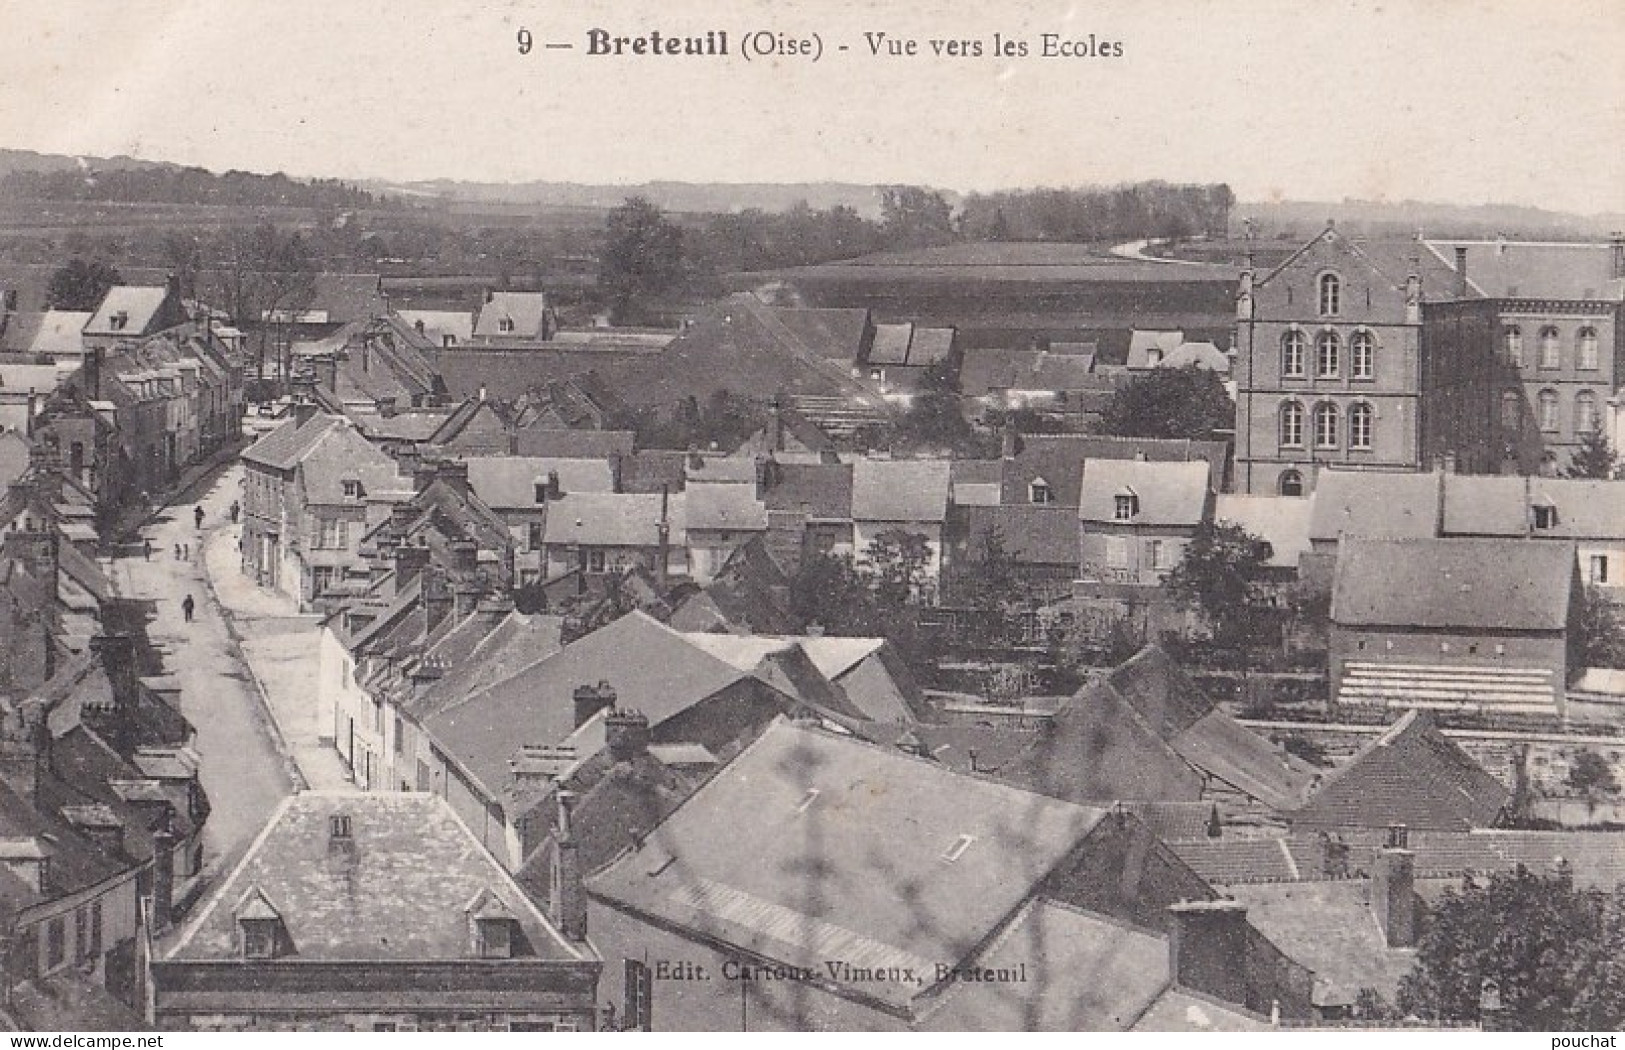 A16-60) BRETEUIL (OISE) VUE VERS LES ECOLES - ( 2 SCANS ) - Breteuil